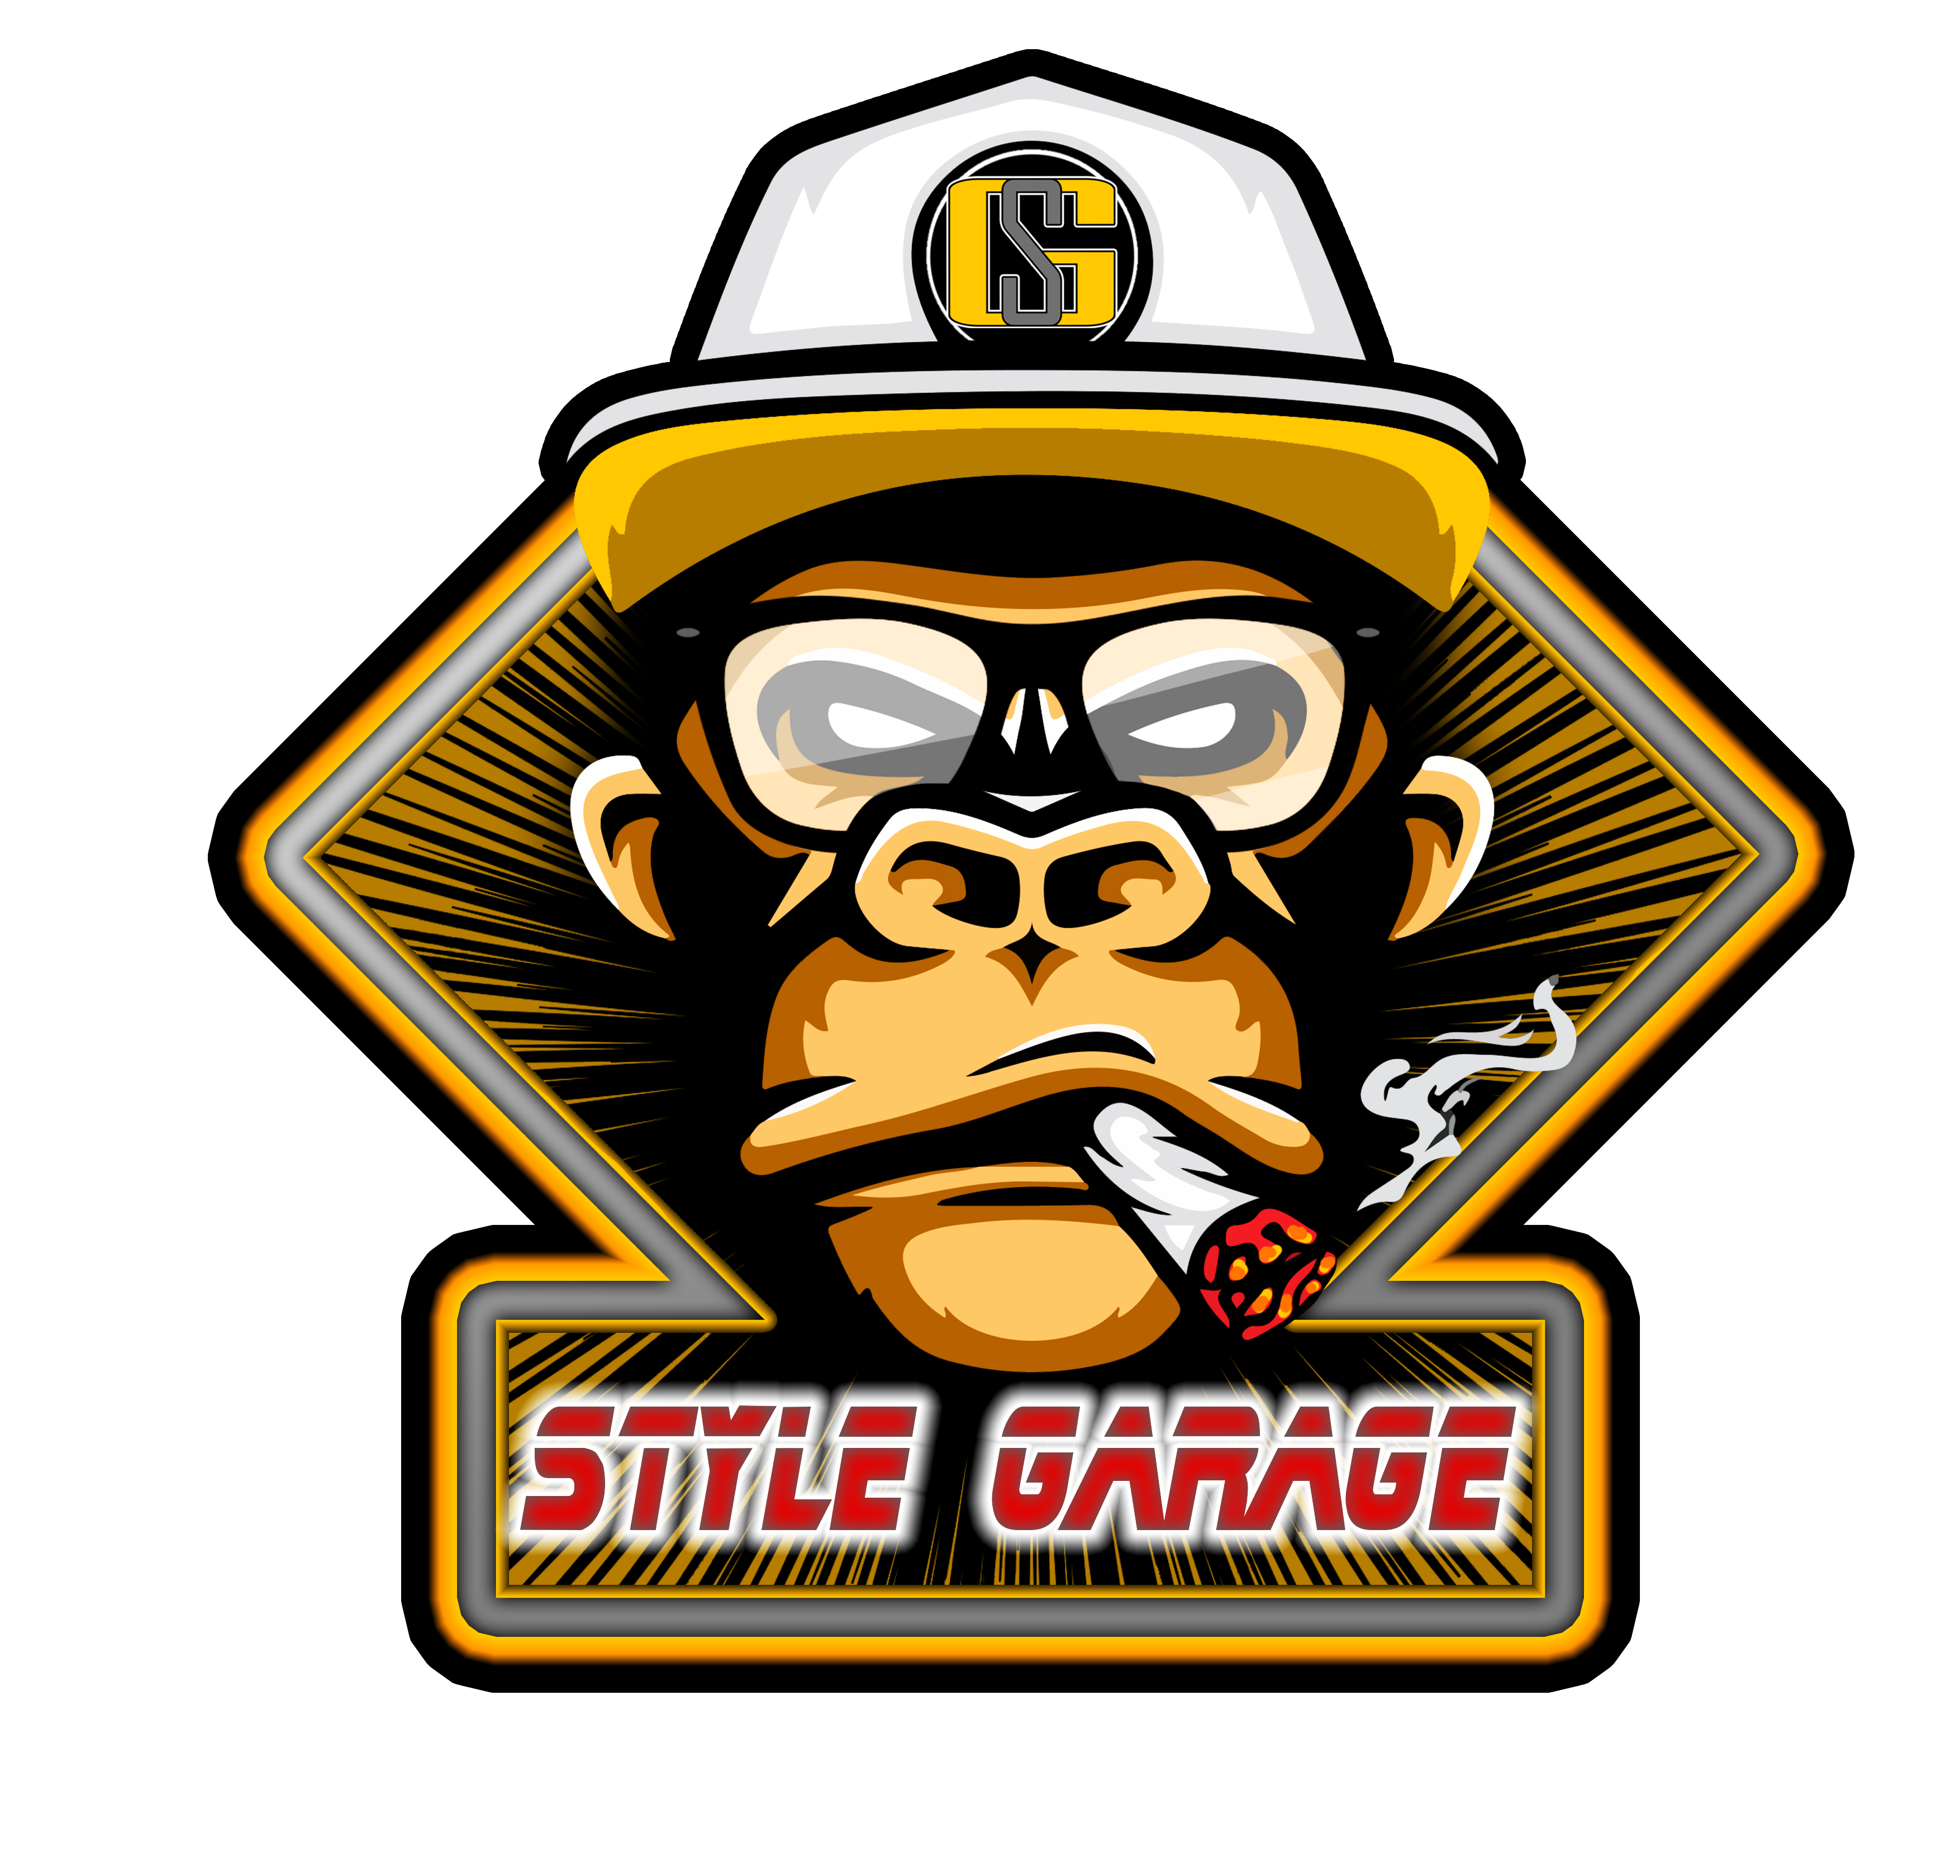 Style garage